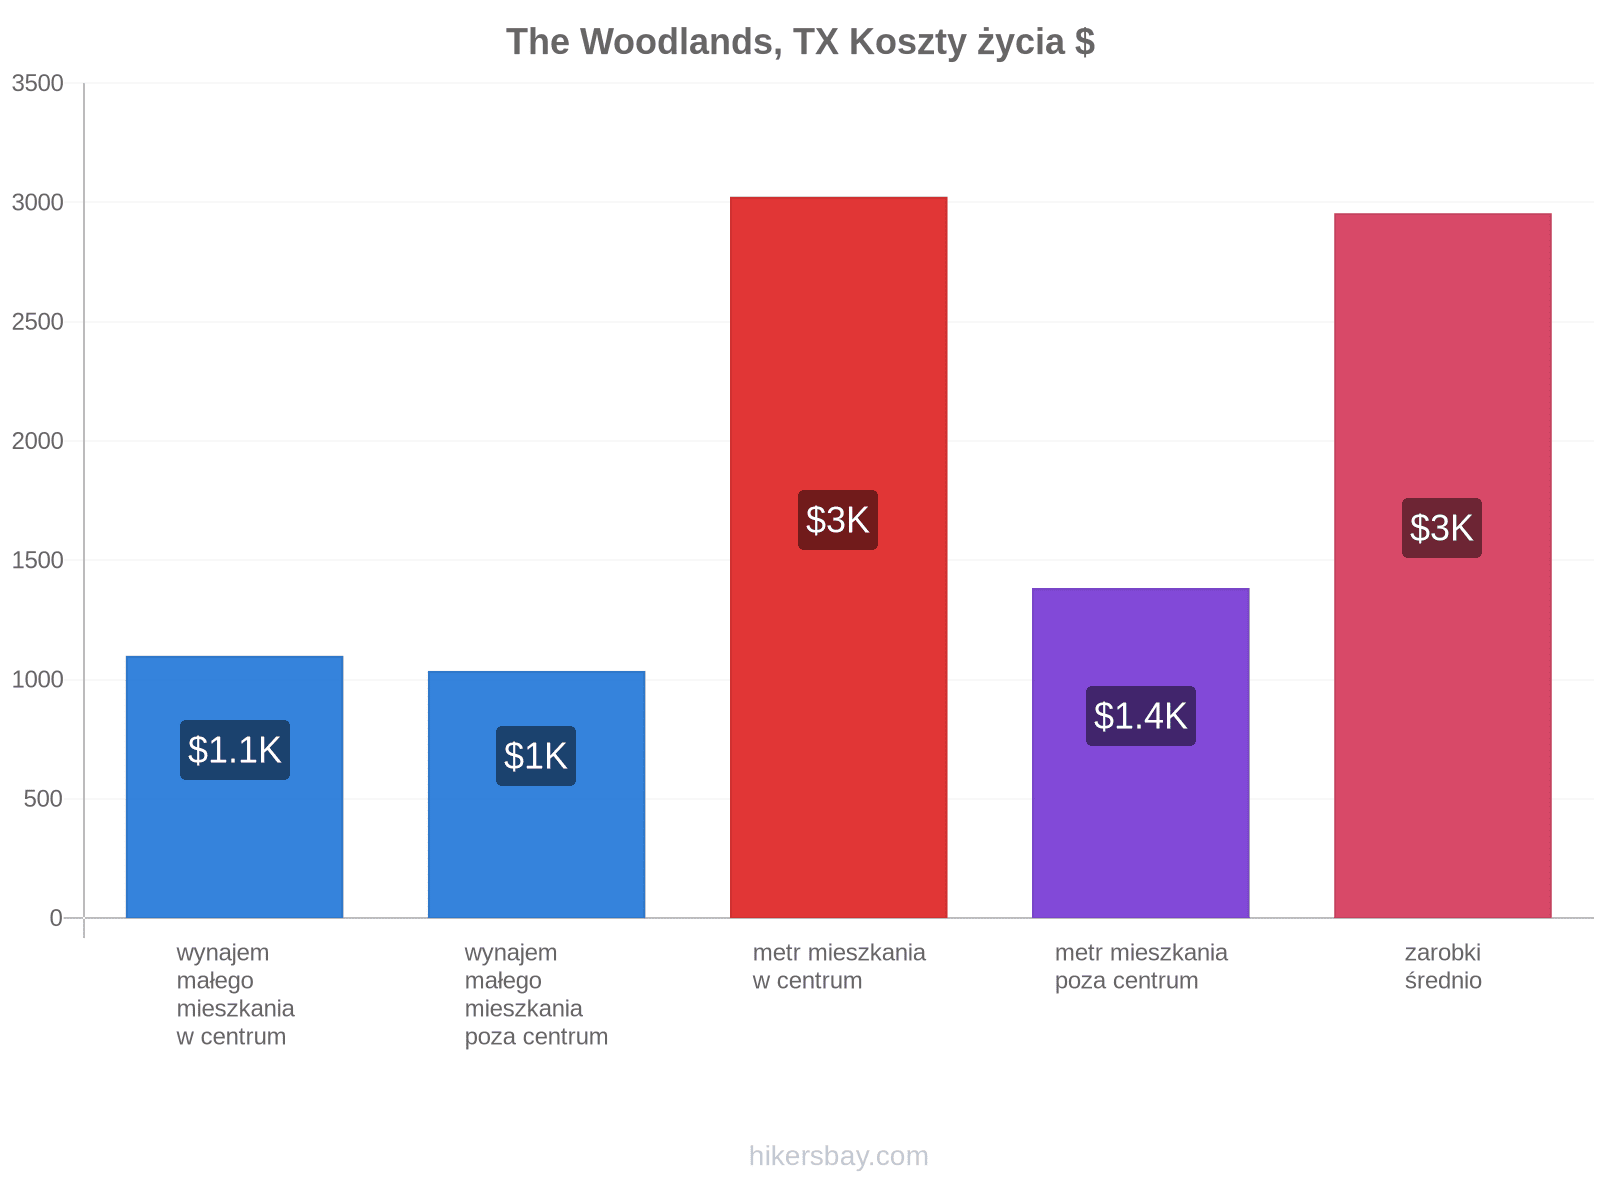 The Woodlands, TX koszty życia hikersbay.com